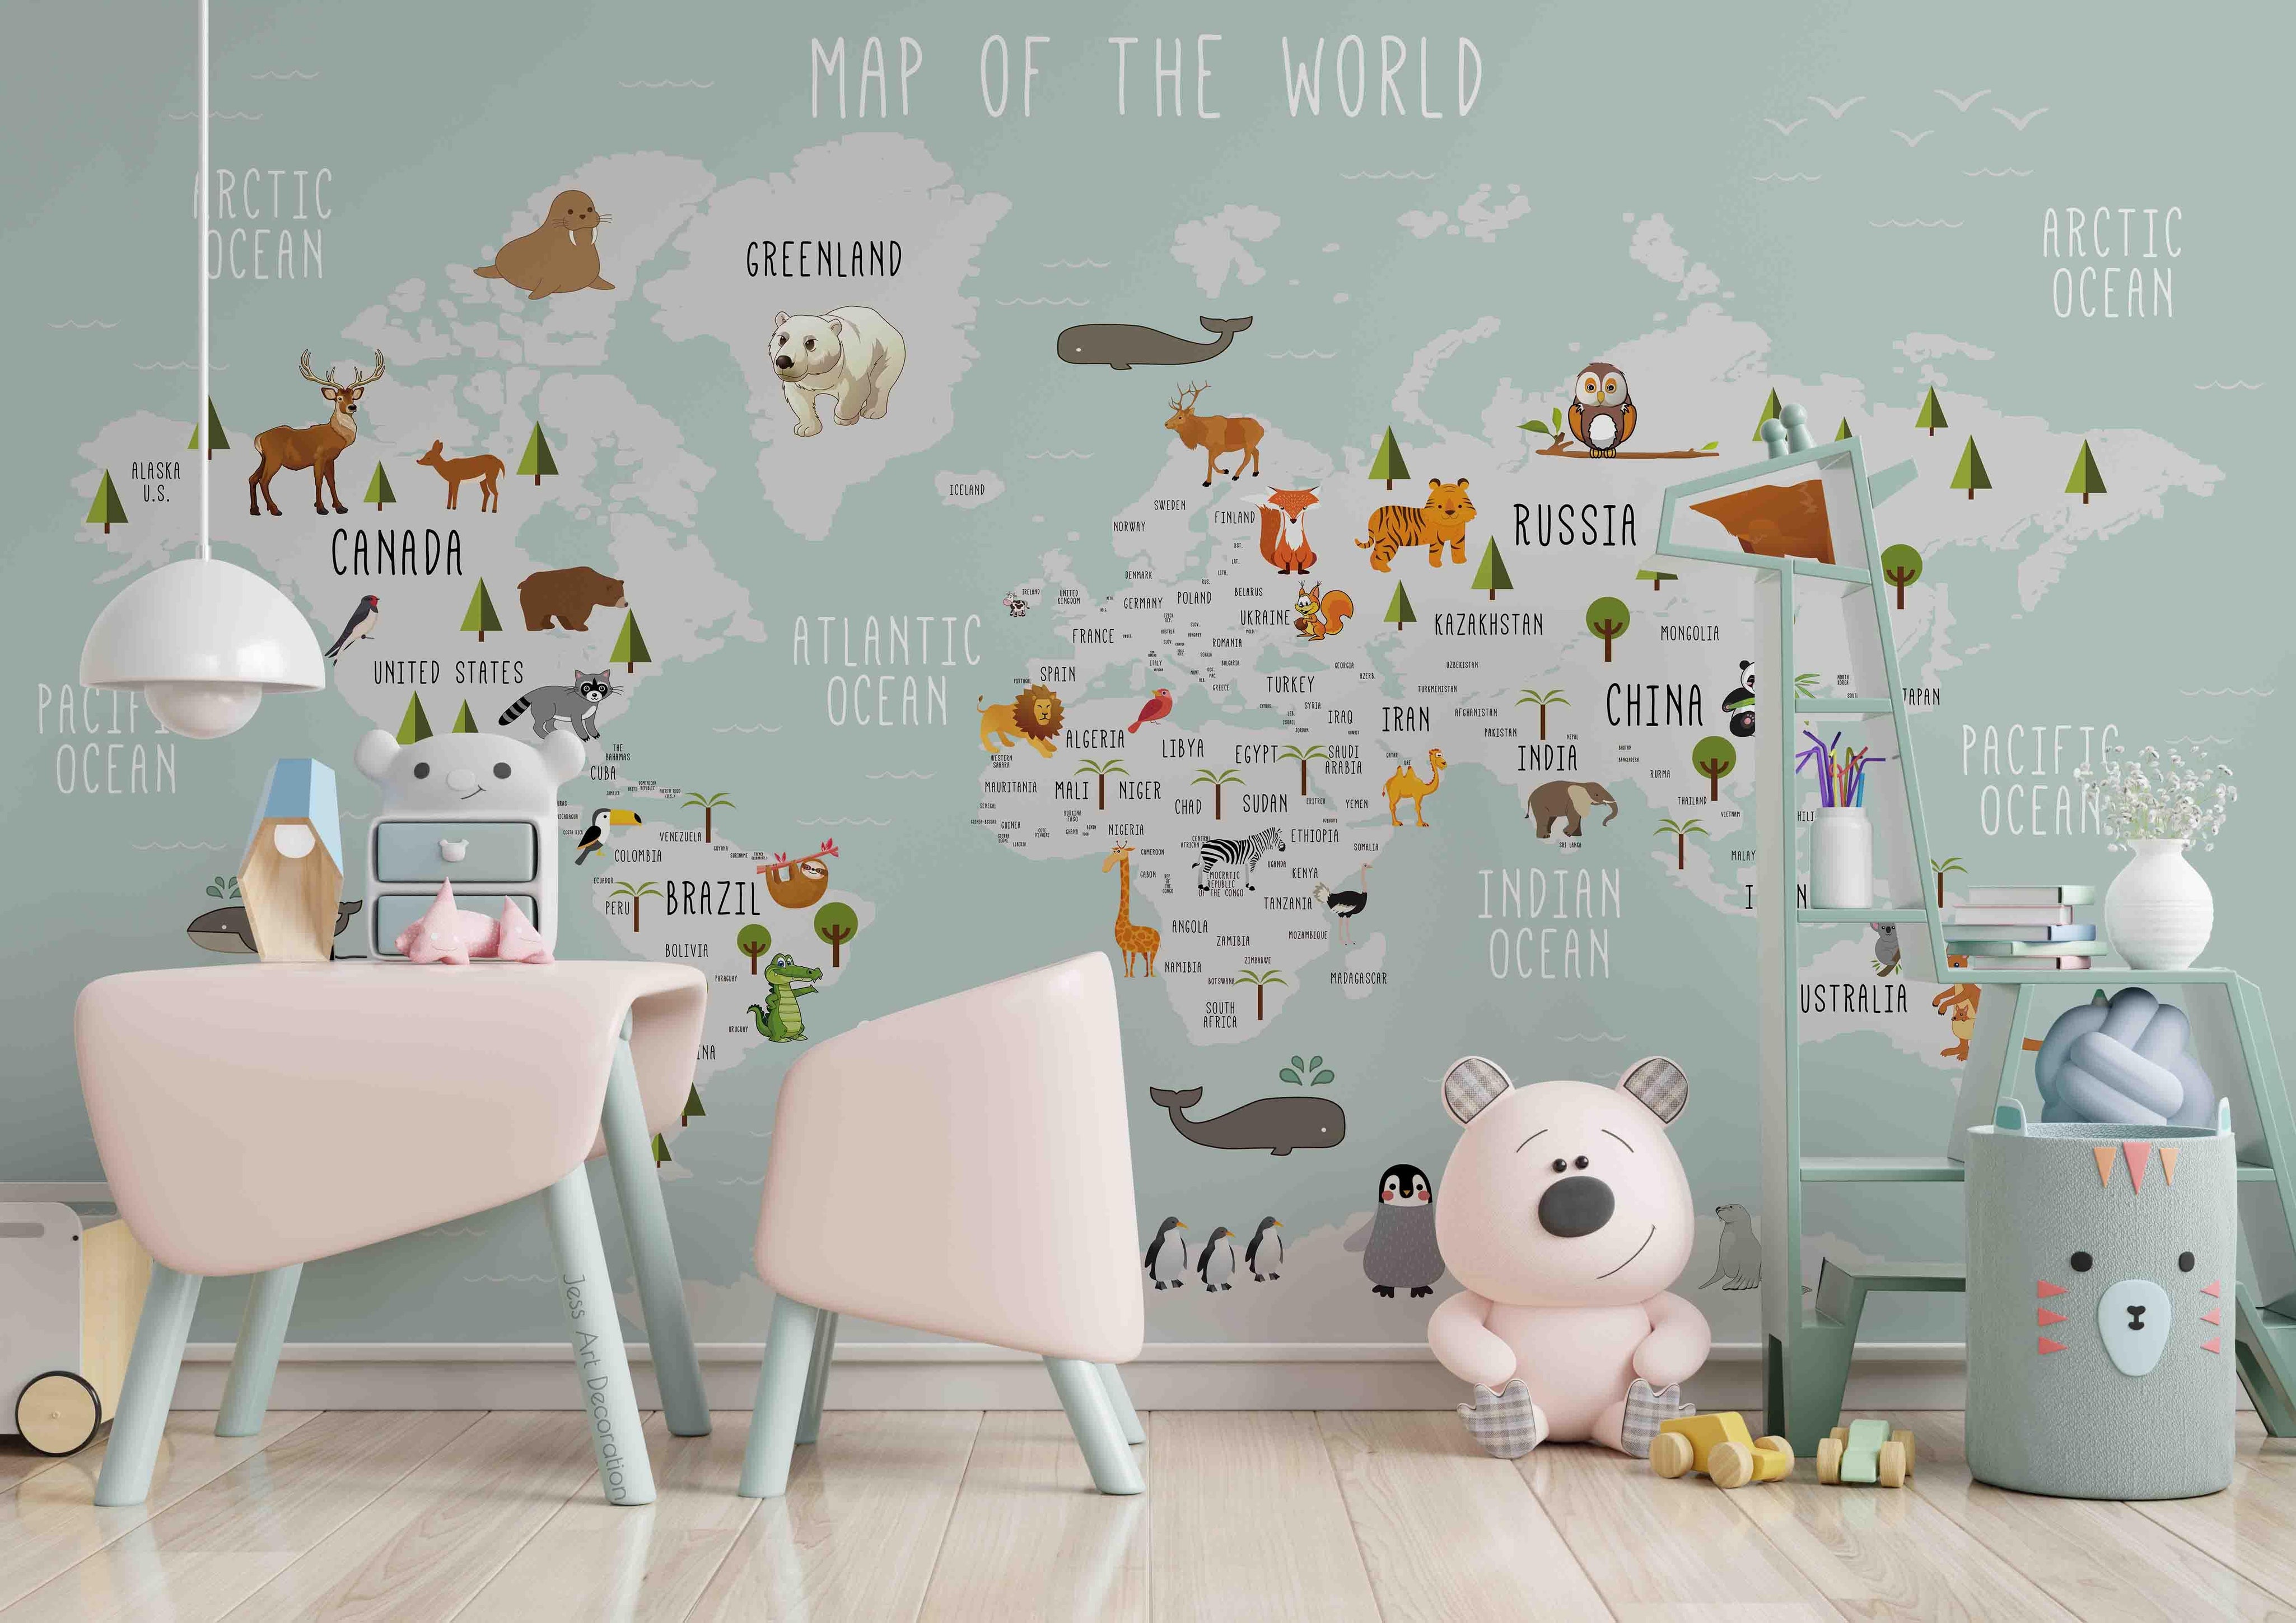 3D Cartoon World Map Wall Mural Wallpaper sww 90- Jess Art Decoration